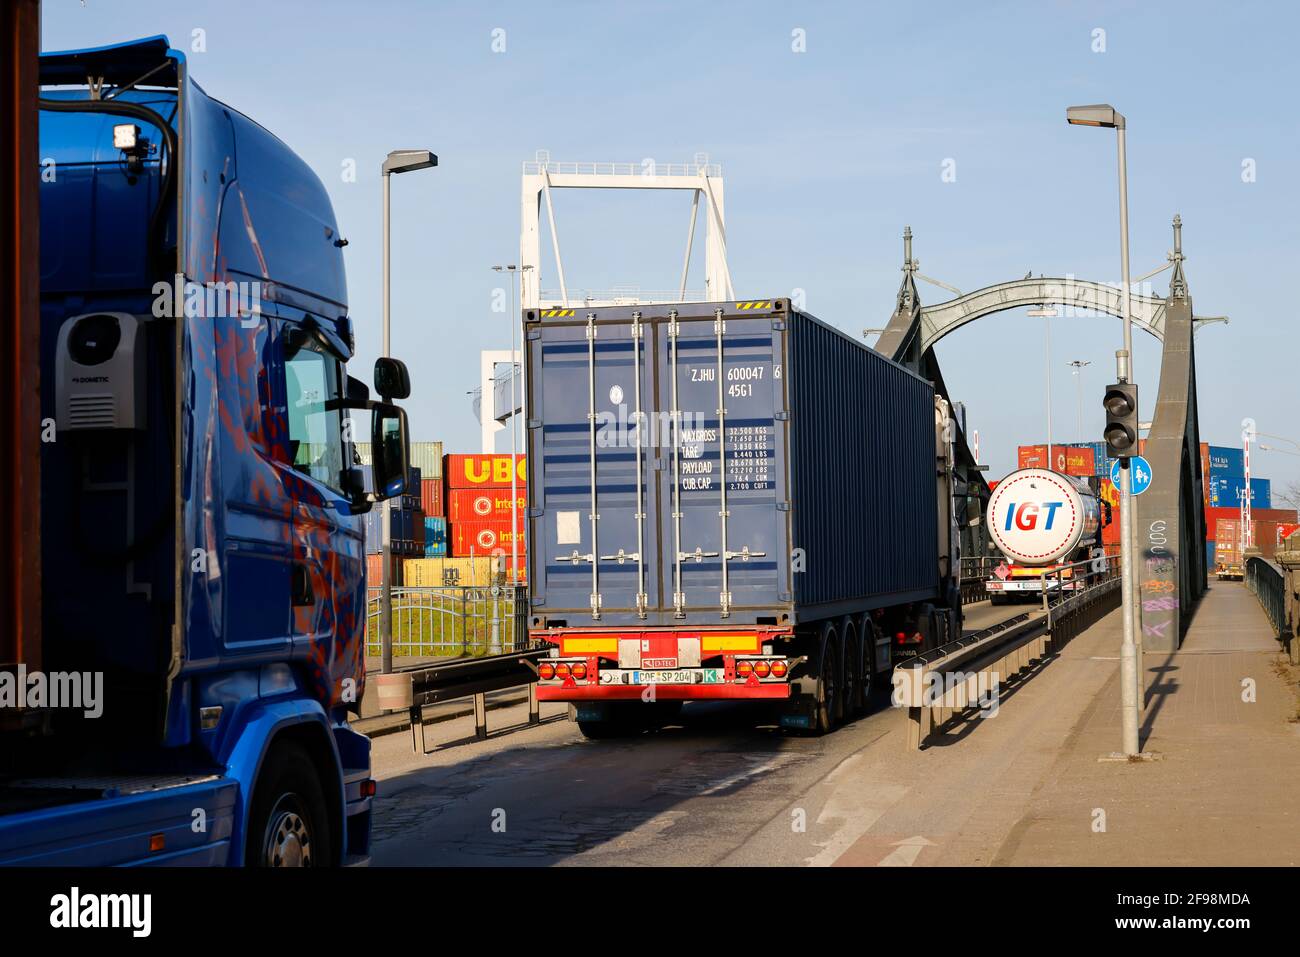 Krefeld, Rhénanie-du-Nord-Westphalie, Allemagne - le Rheinhafen Krefeld est le quatrième plus grand port de la Rhénanie-du-Nord-Westphalie, des conteneurs-cars franchissant le pont tournant historique jusqu'au terminal à conteneurs KCT Krefeld. Banque D'Images